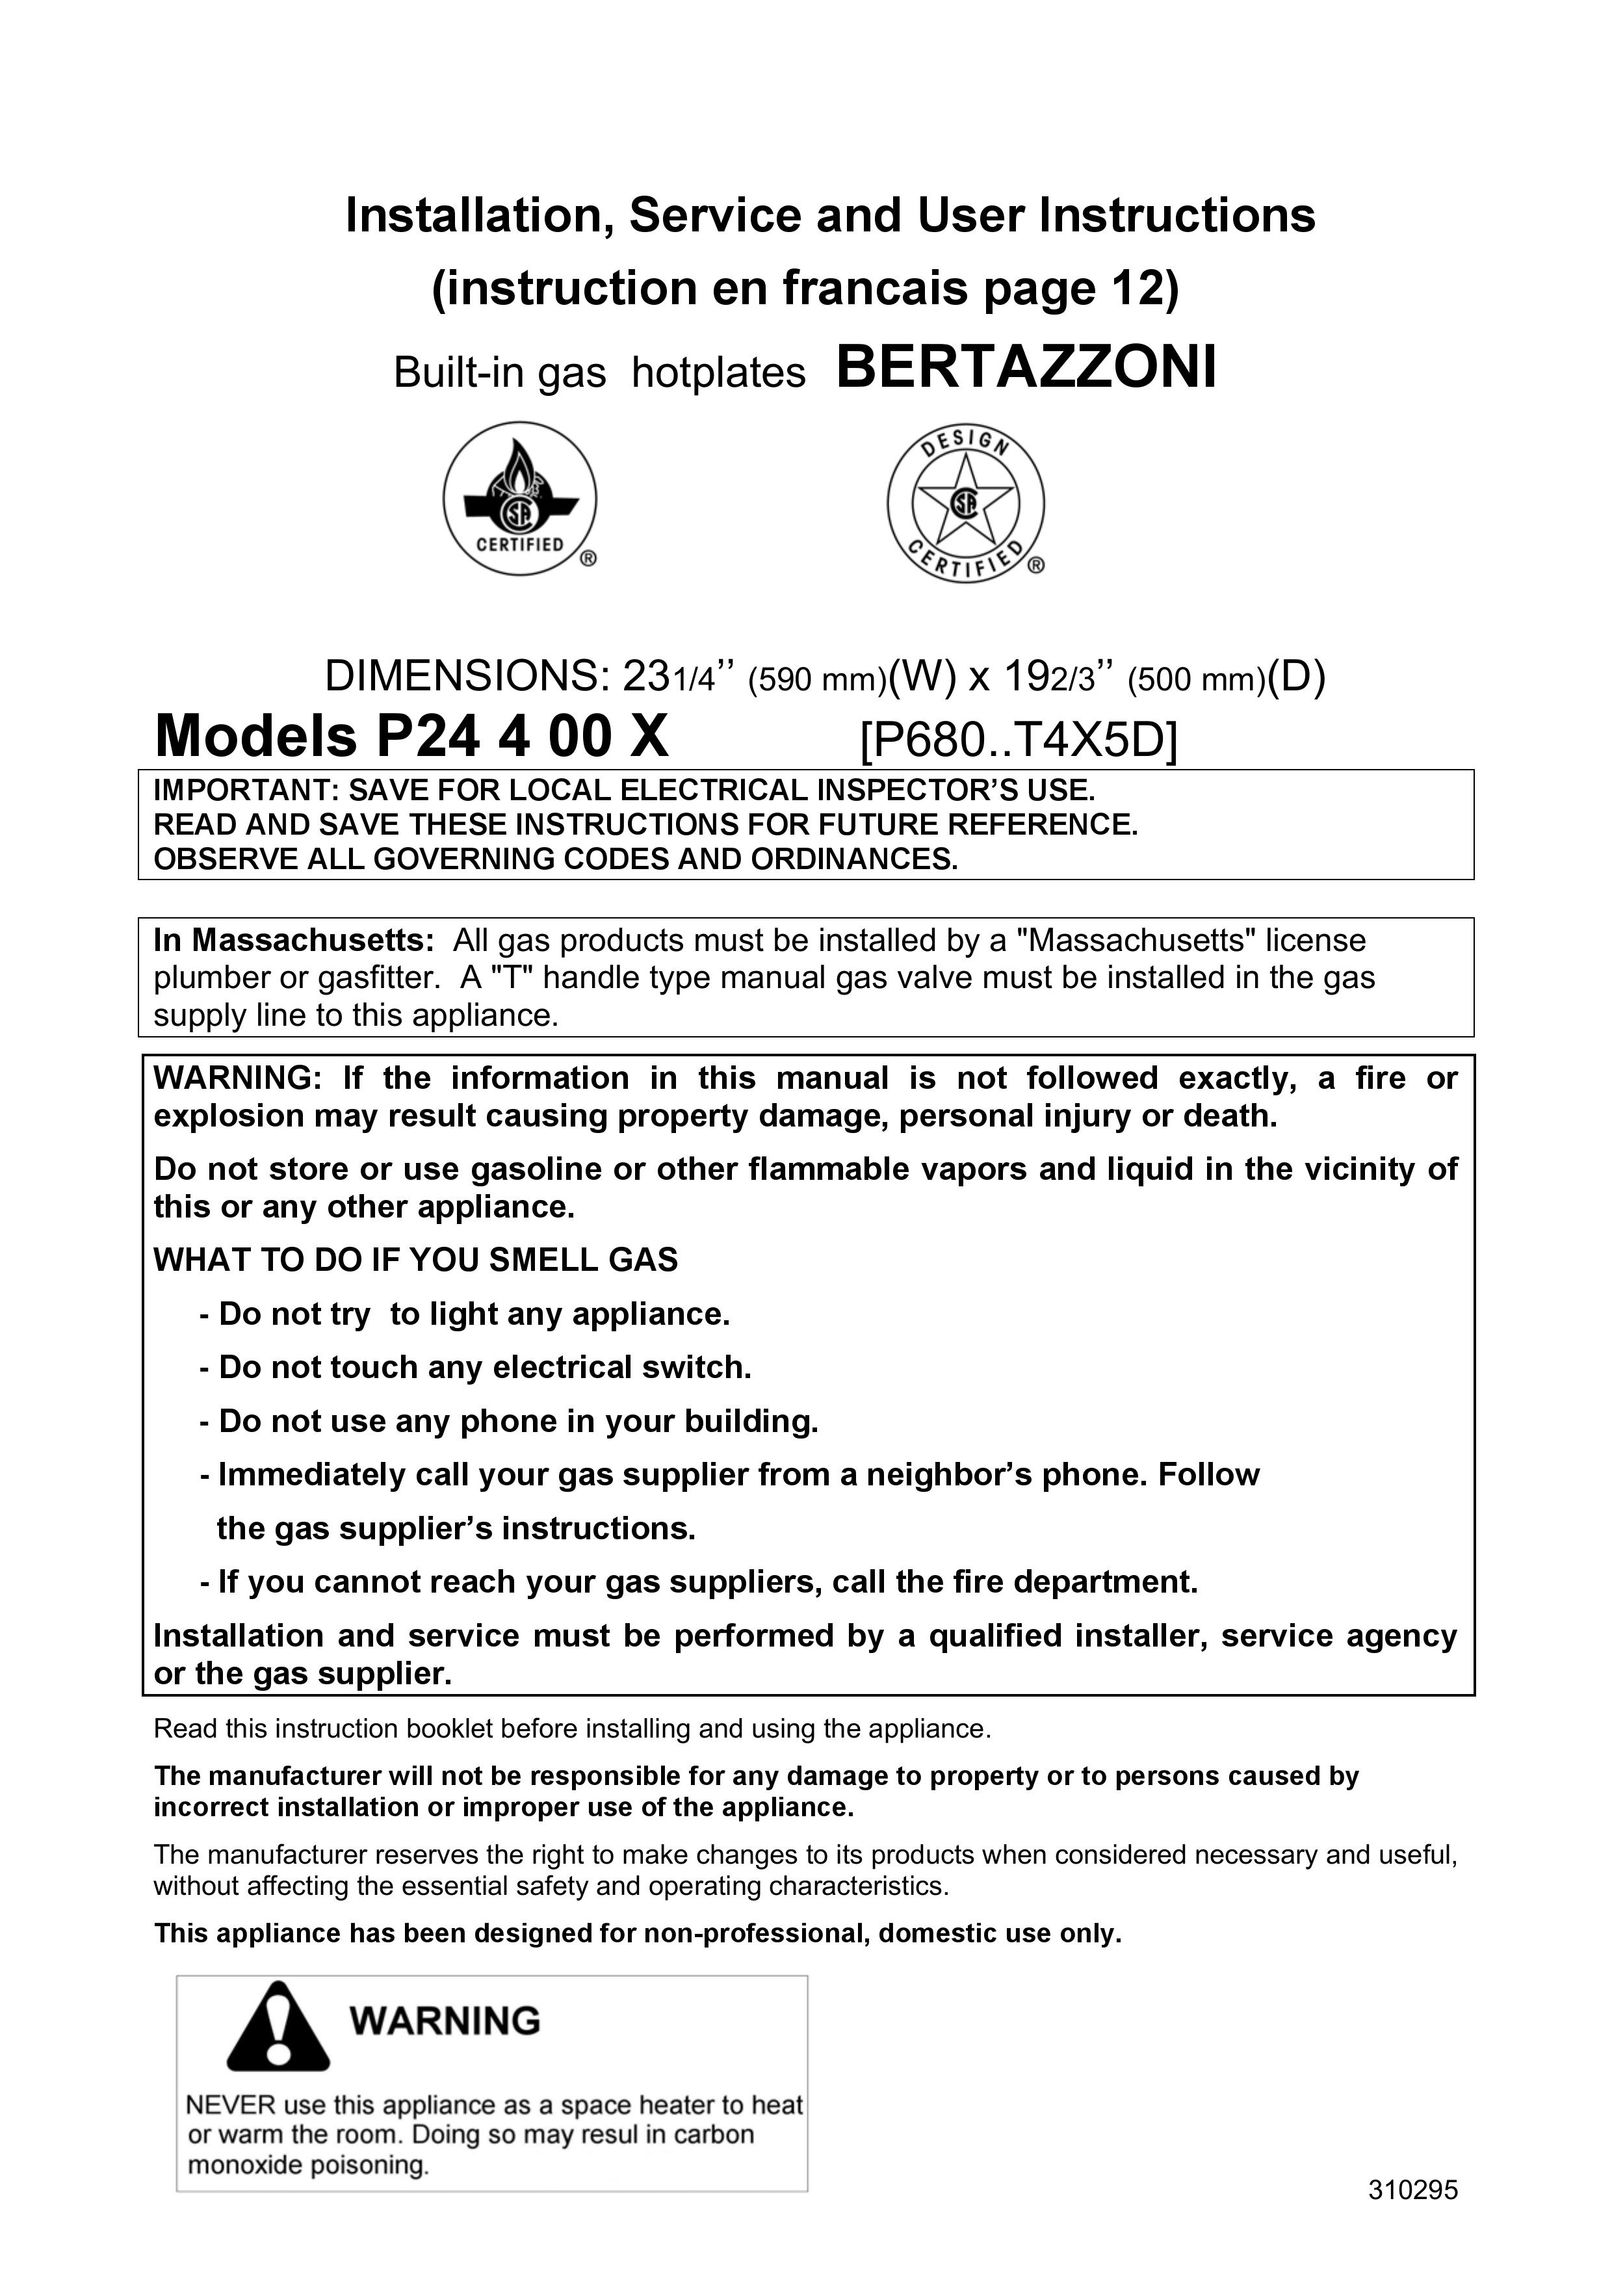 Bertazzoni P24400X Cooktop User Manual